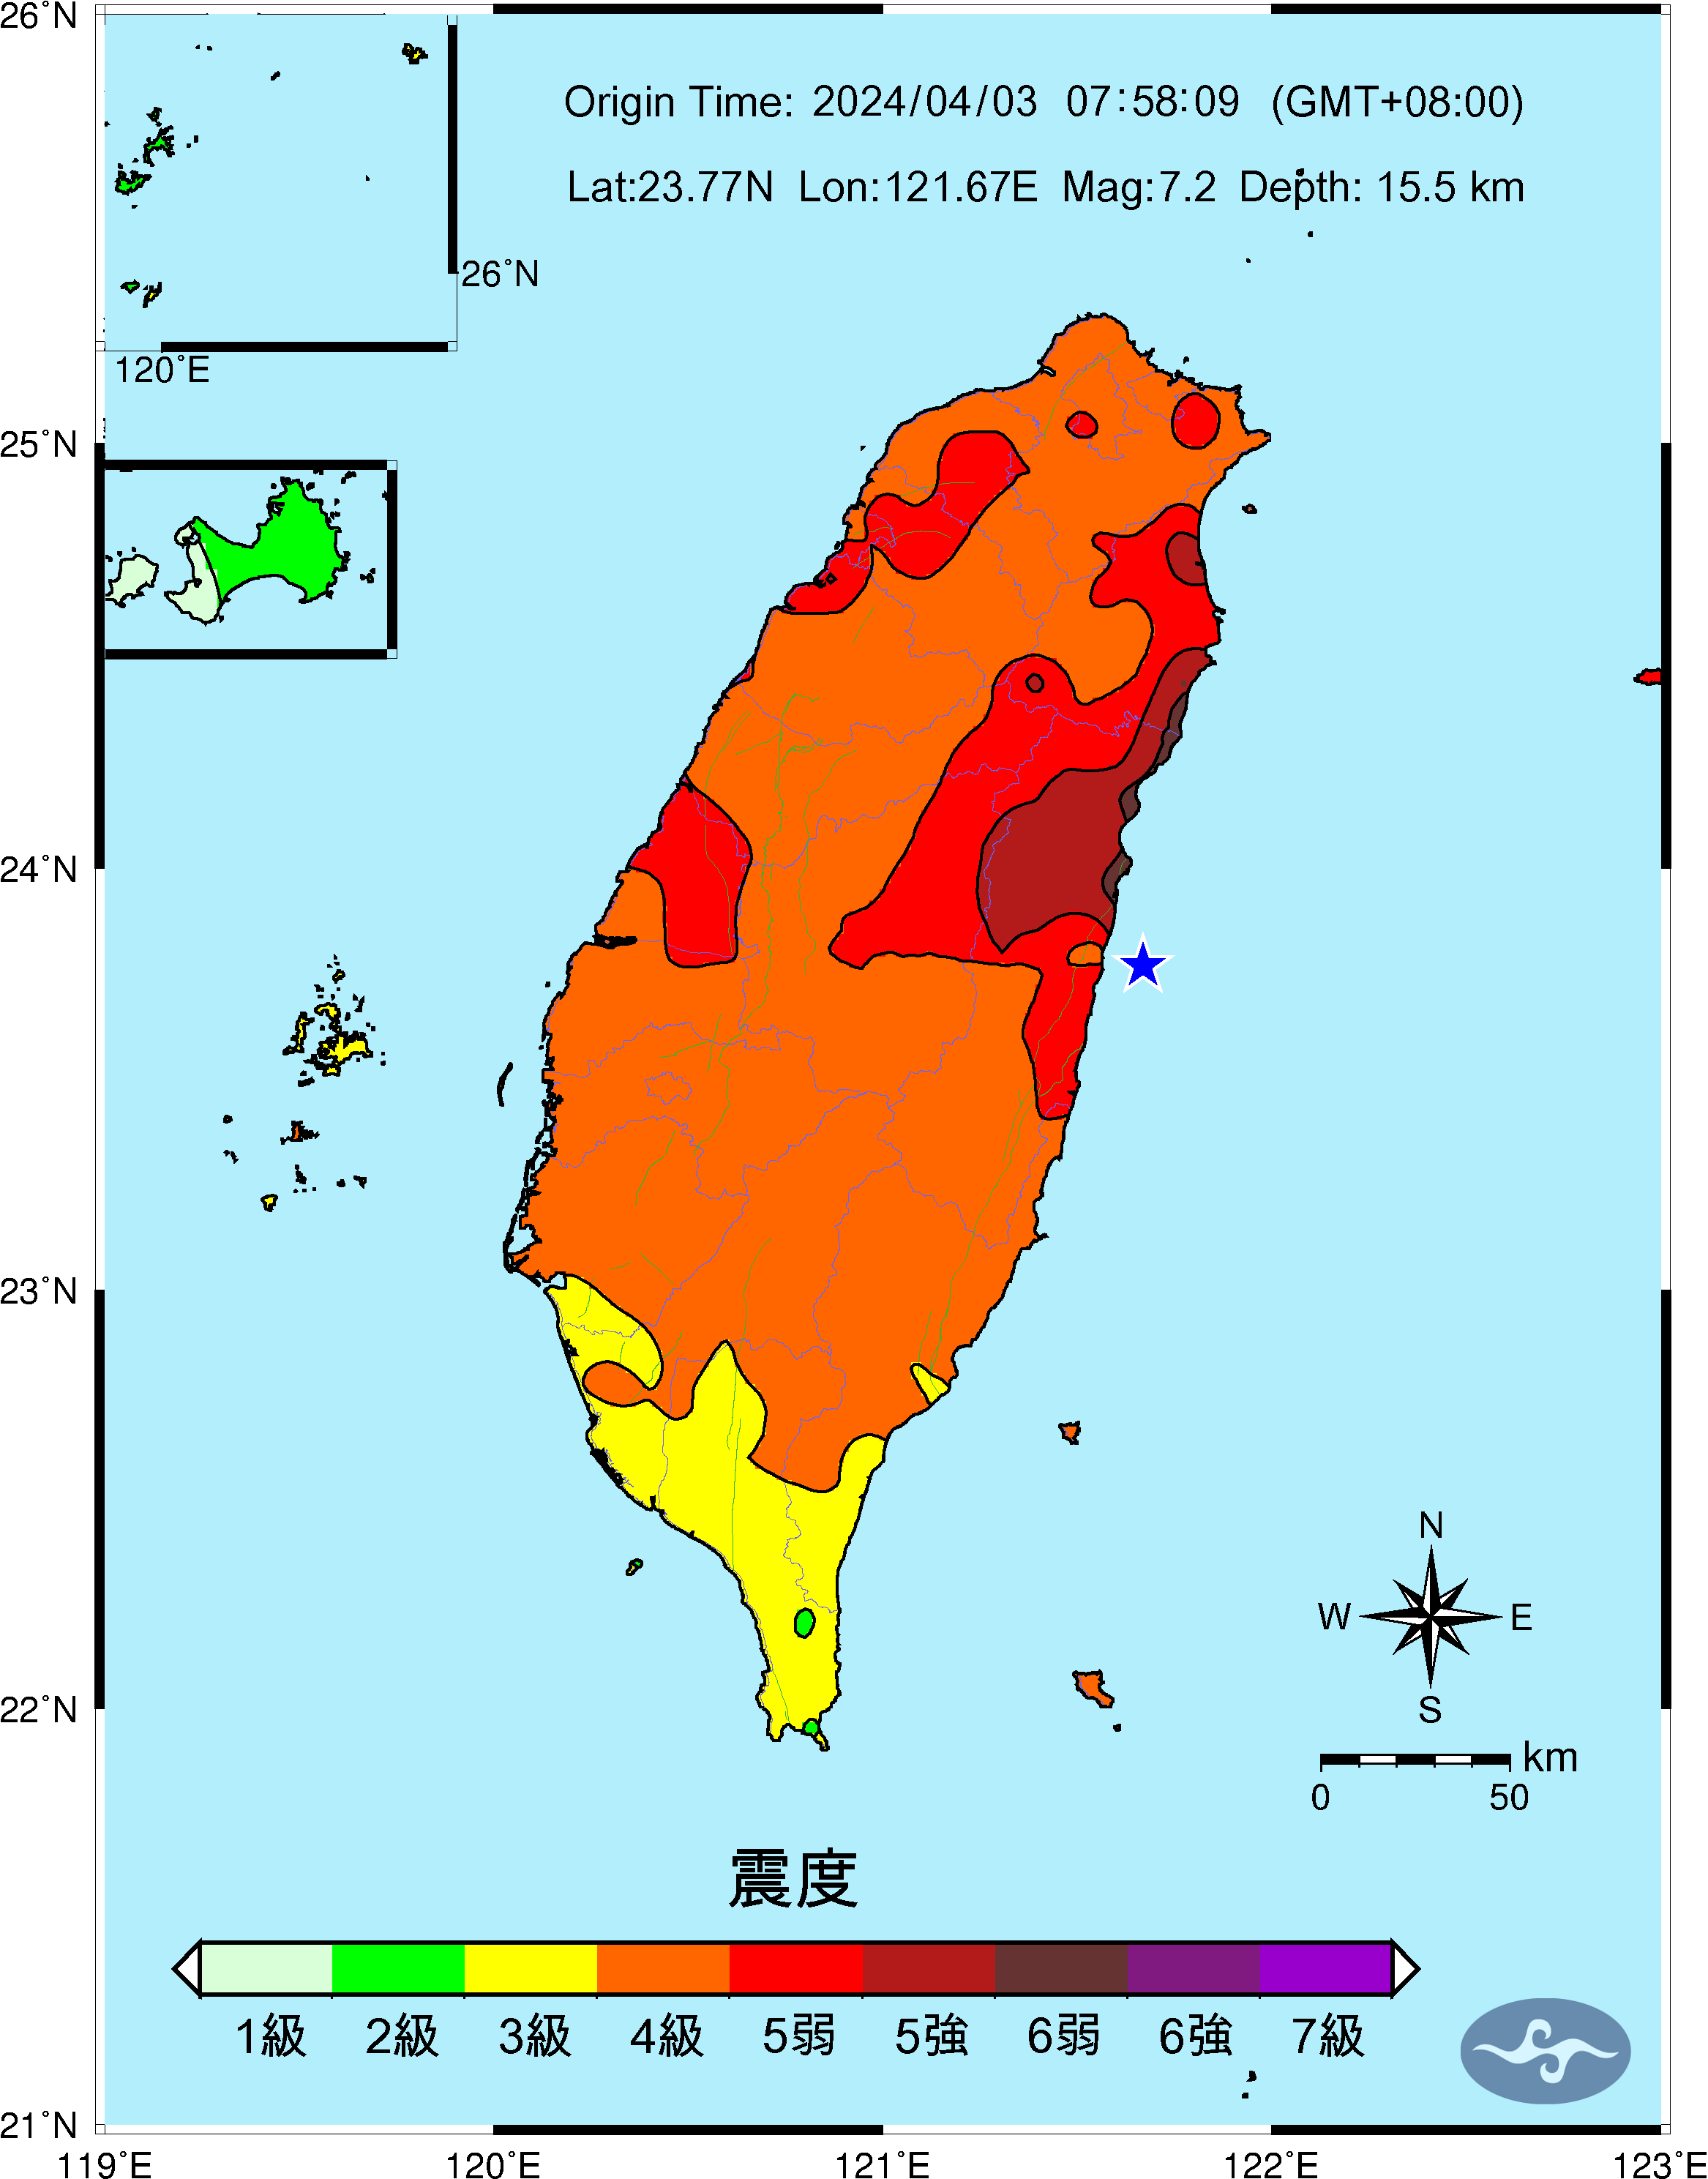 2024/04/03 臺灣-花蓮M7.2 震度6+ 17人罹難 2失蹤 逾千人受傷